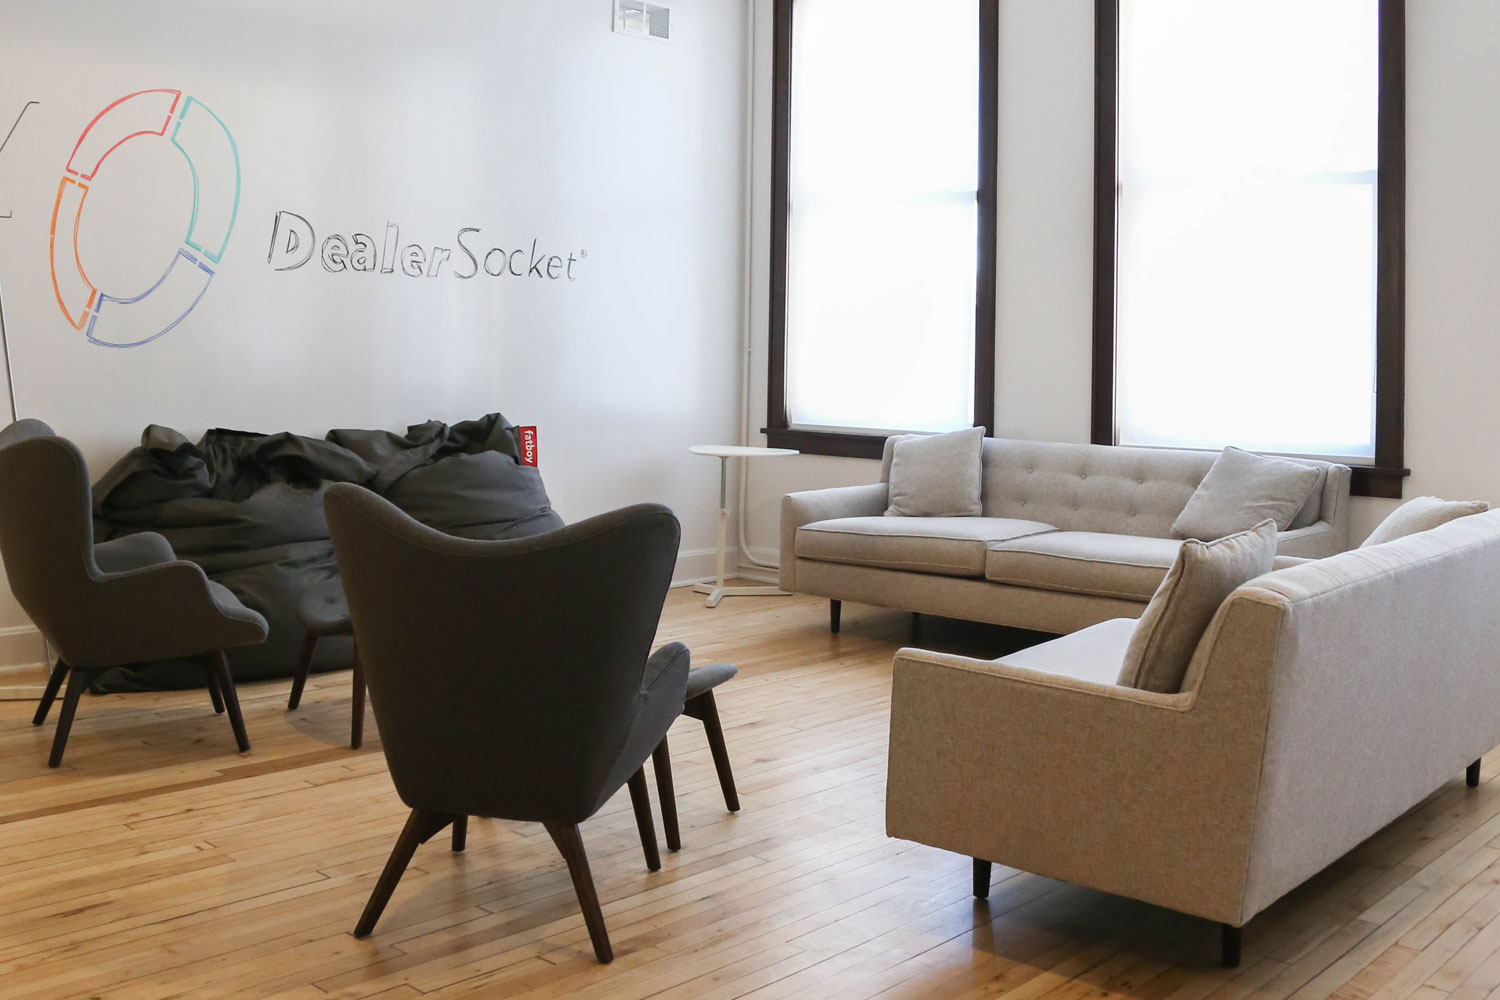 Dealer Socket Design Build Lounge